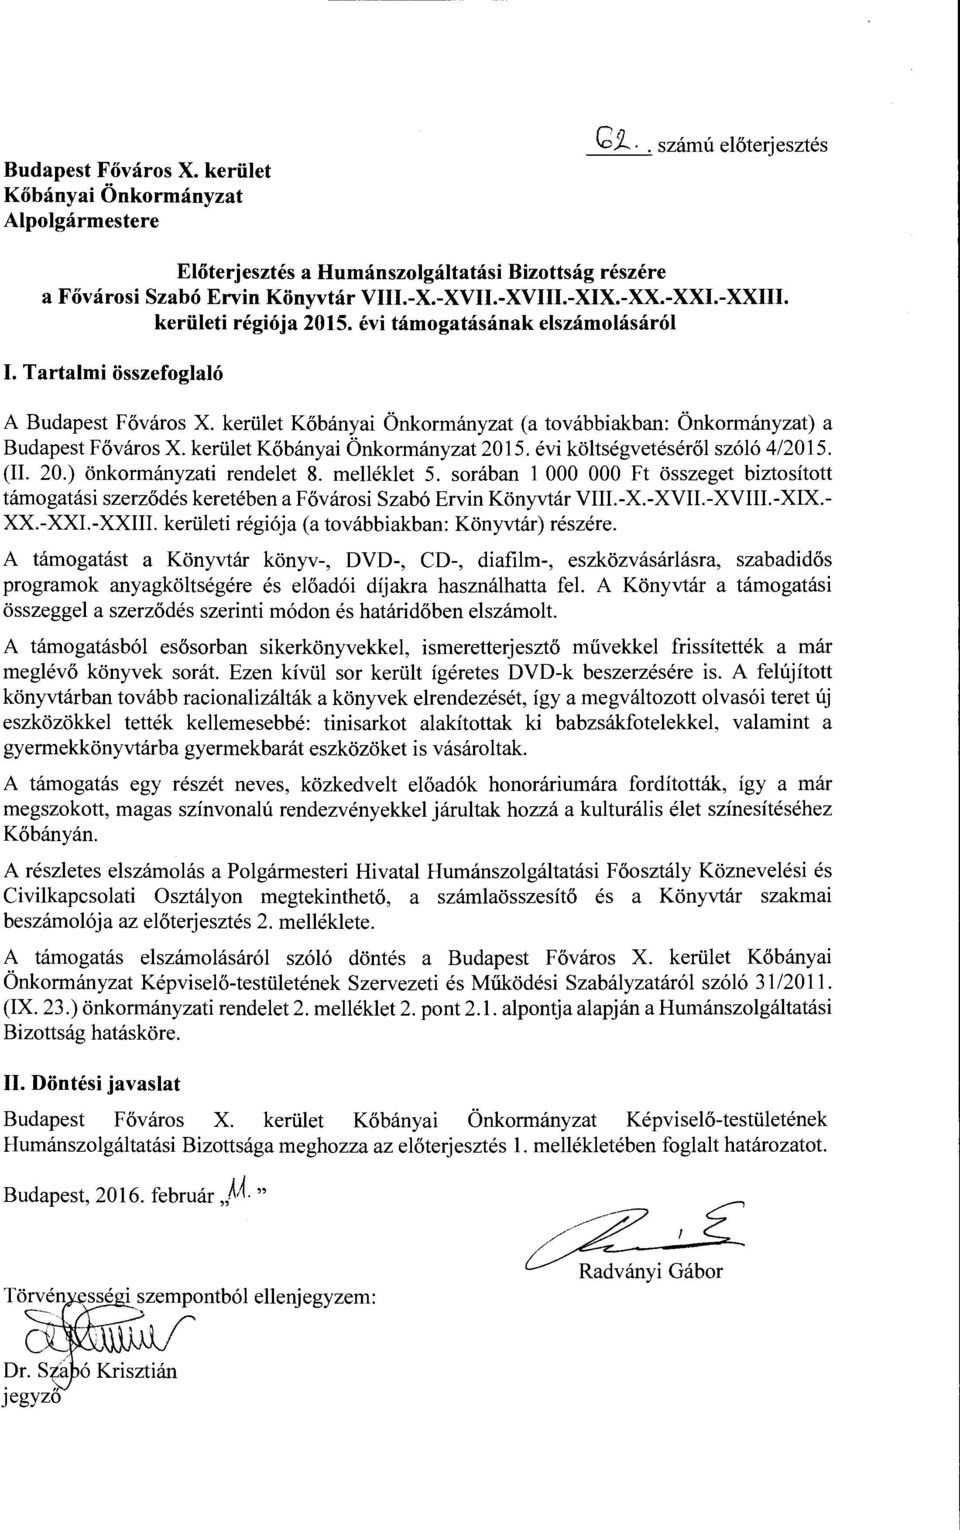 kerület Kőbányai Önkormányzat (a továbbiakban: Önkormányzat) a Budapest Fő város X. kerület Kőbányai Önkormányzat 2015. évi költségvetéséről szóló 4/2015. (II. 20.) önkormányzati rendelet 8.